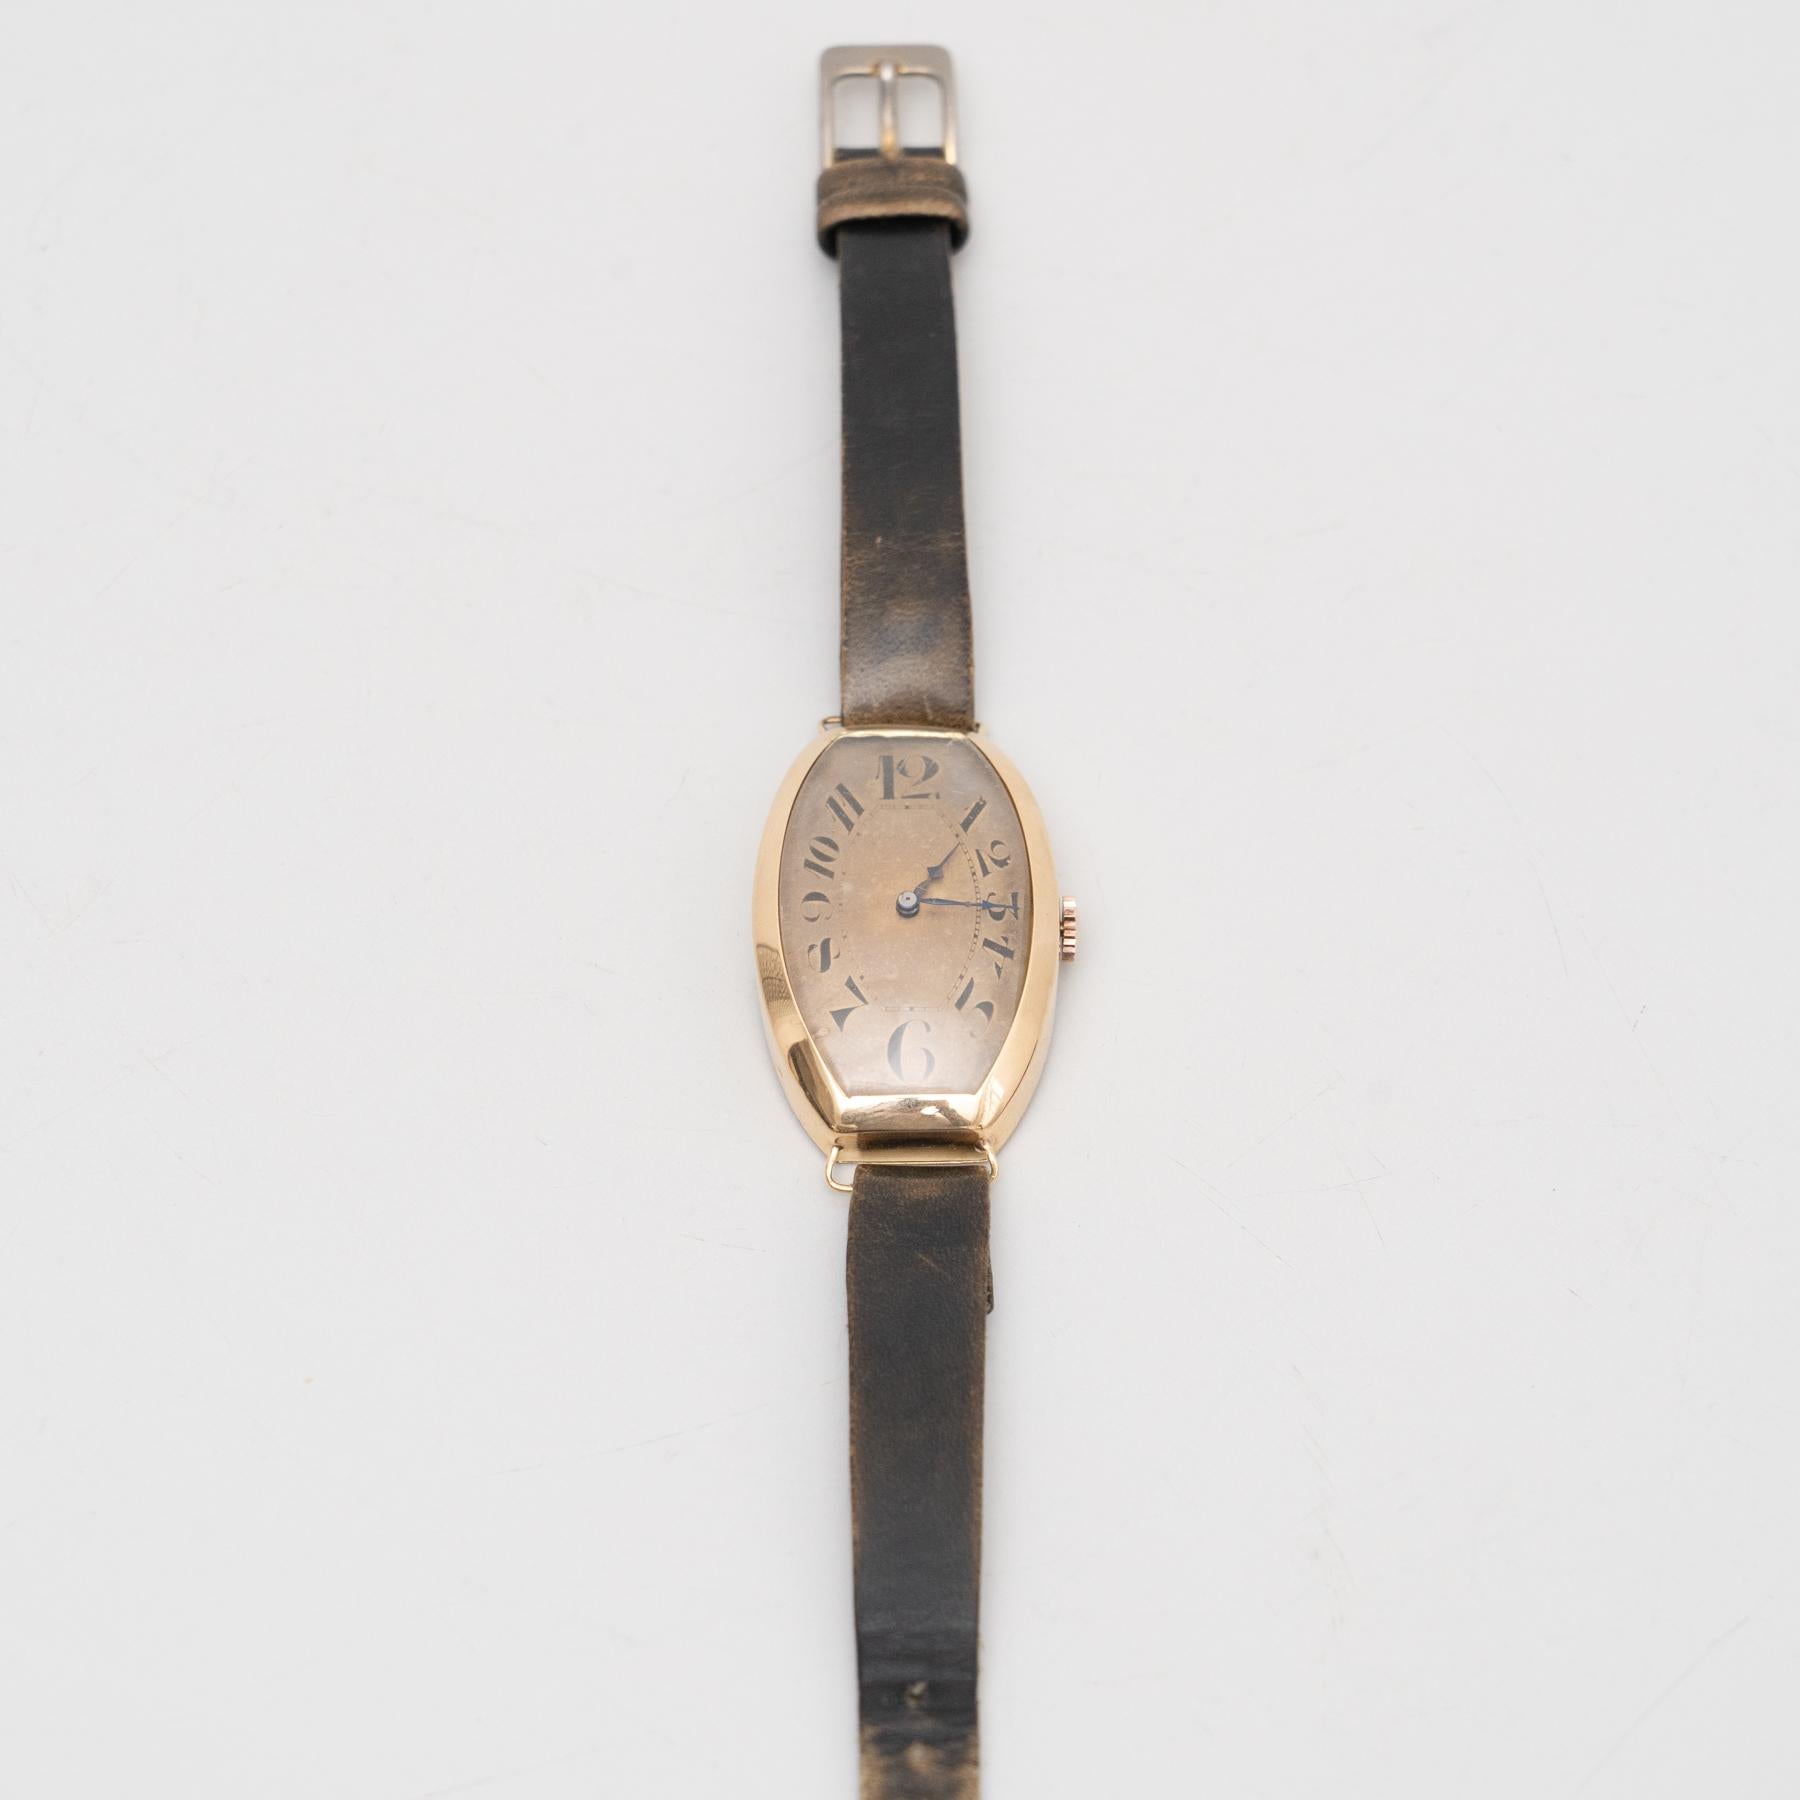 Traditionelle Vintage-Armbanduhr mit dem originalen Lederarmband.

Versetzen Sie sich in die Vergangenheit mit dieser exquisiten traditionellen Armbanduhr aus den 1930er Jahren. Diese markenlose Uhr ist eine perfekte Ergänzung für jede Uhrensammlung